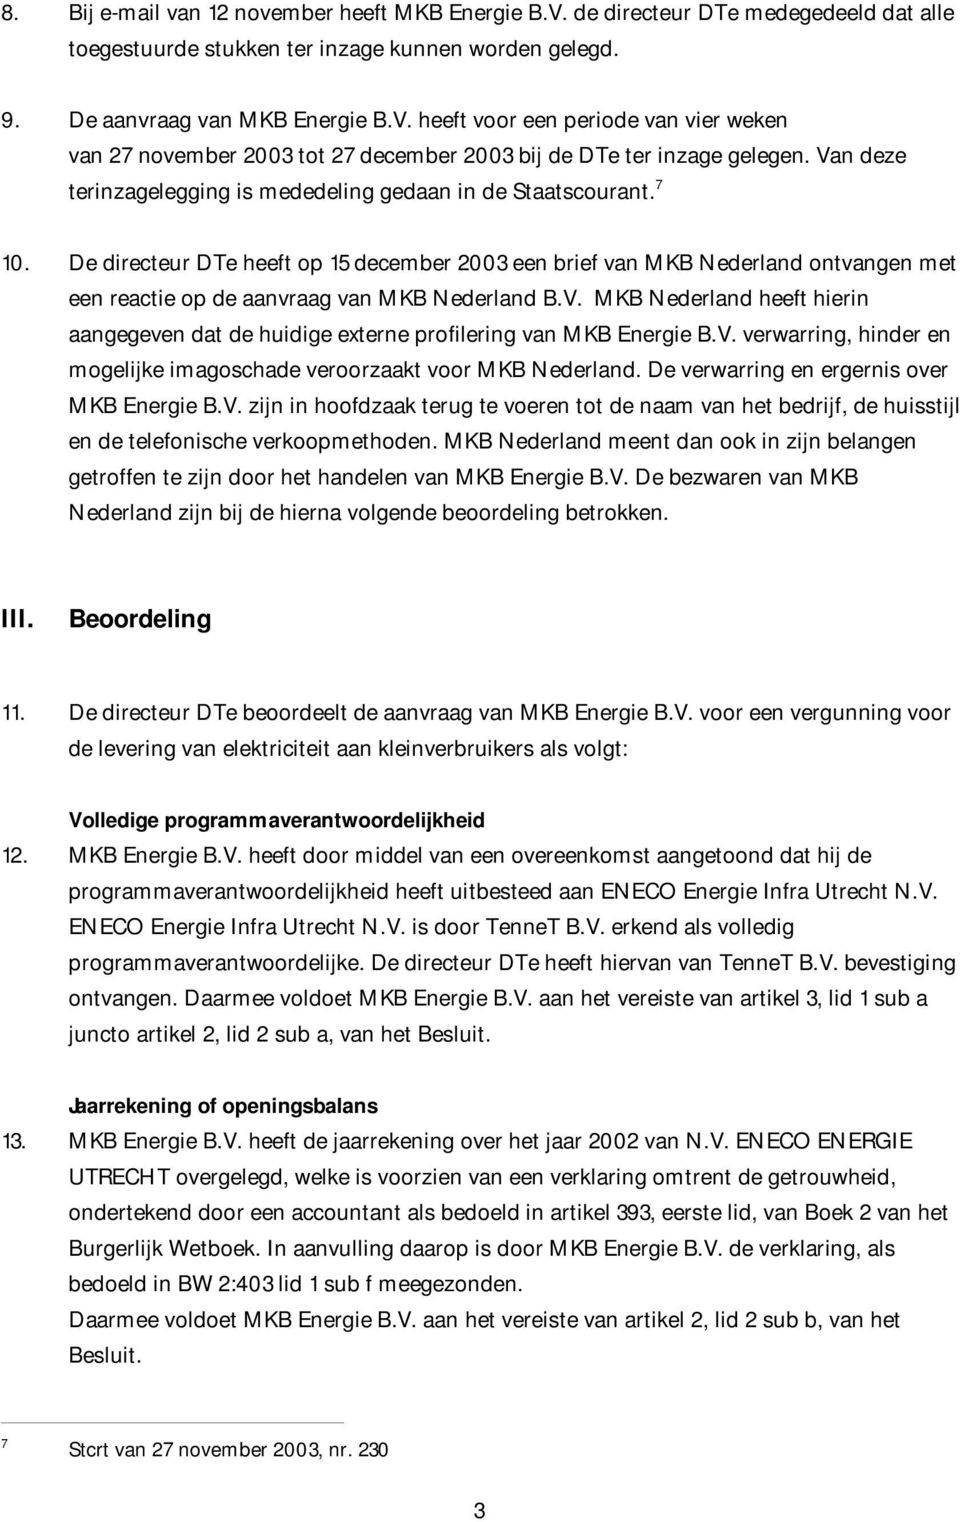 De directeur DTe heeft op 15 december 2003 een brief van MKB Nederland ontvangen met een reactie op de aanvraag van MKB Nederland B.V.